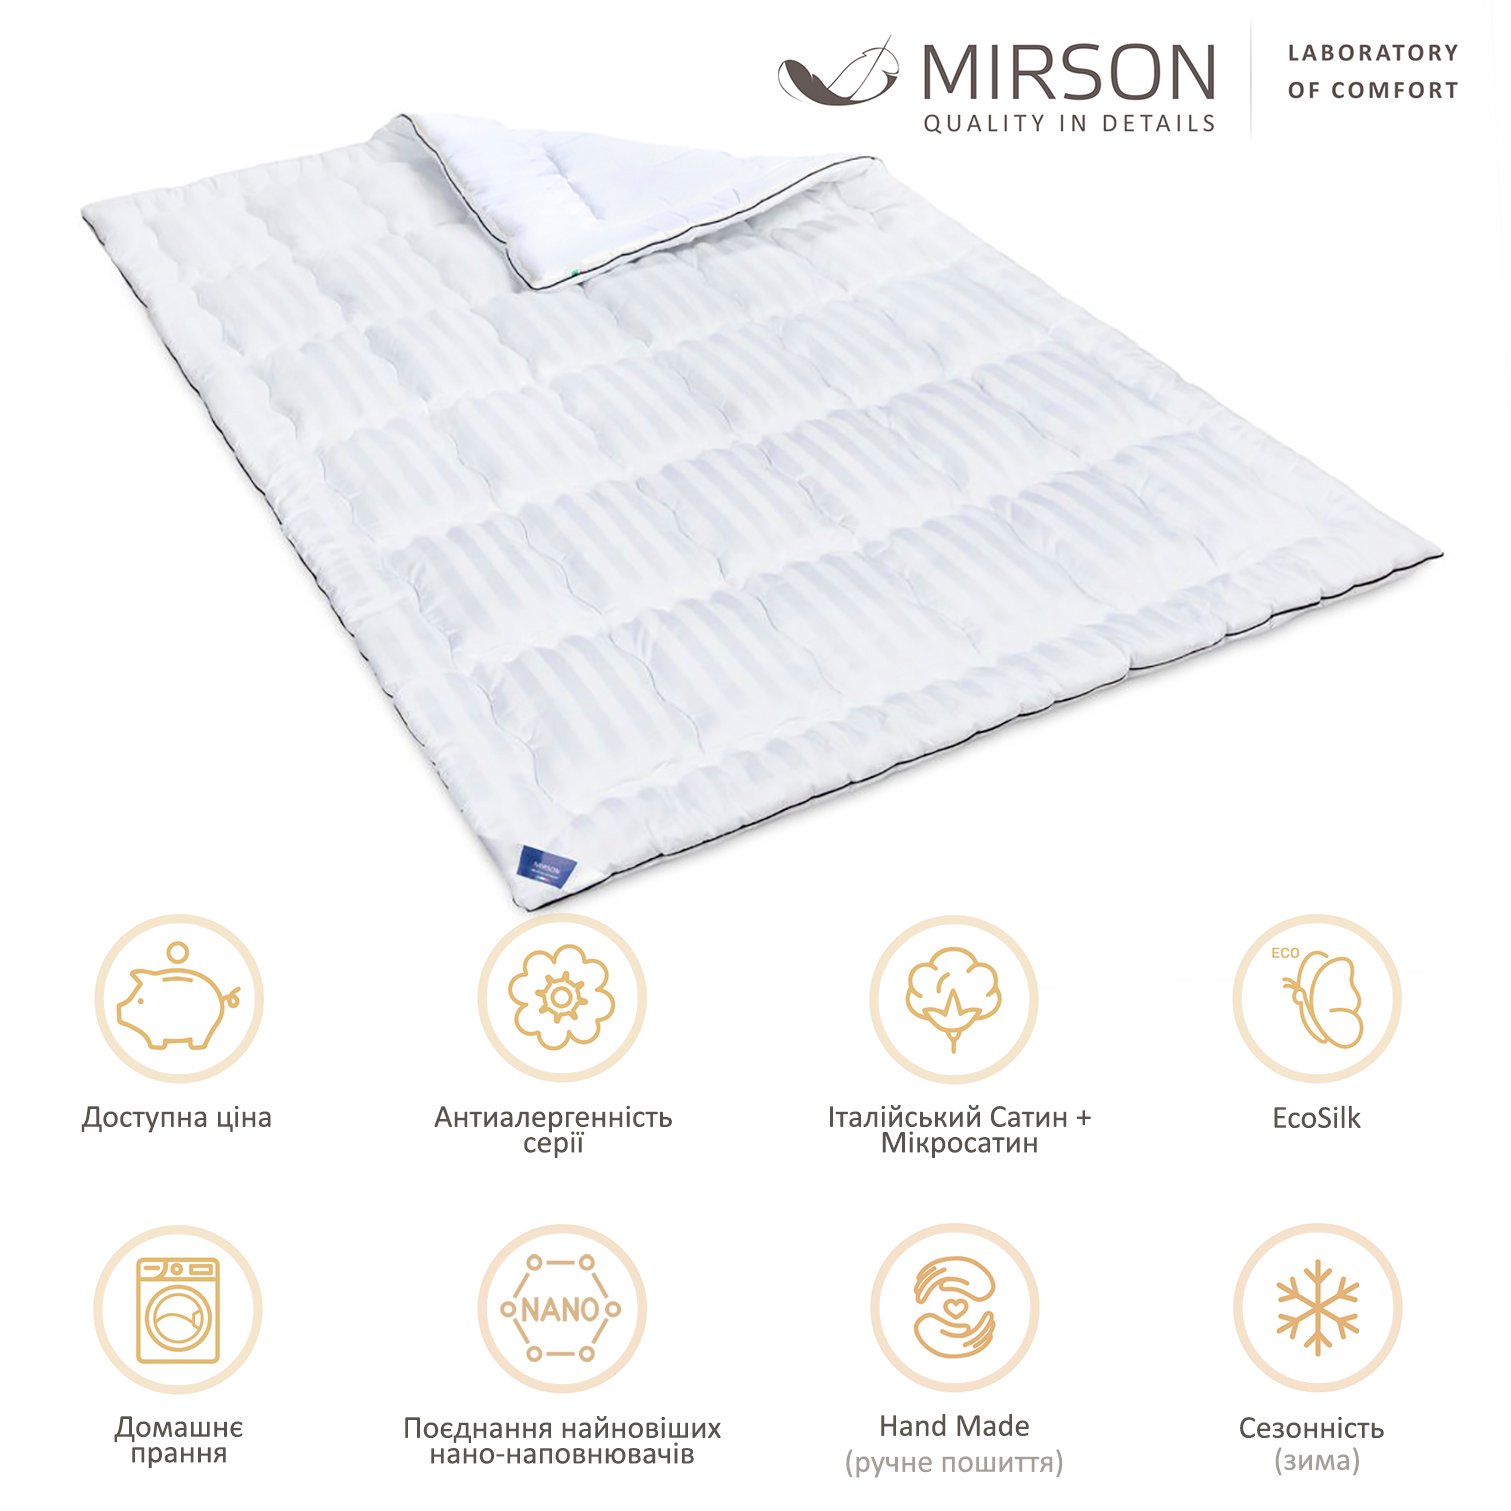 Одеяло антиаллергенное MirSon Royal Pearl Hand Made EcoSilk №0556, зимнее, 200x220 см, белое - фото 5